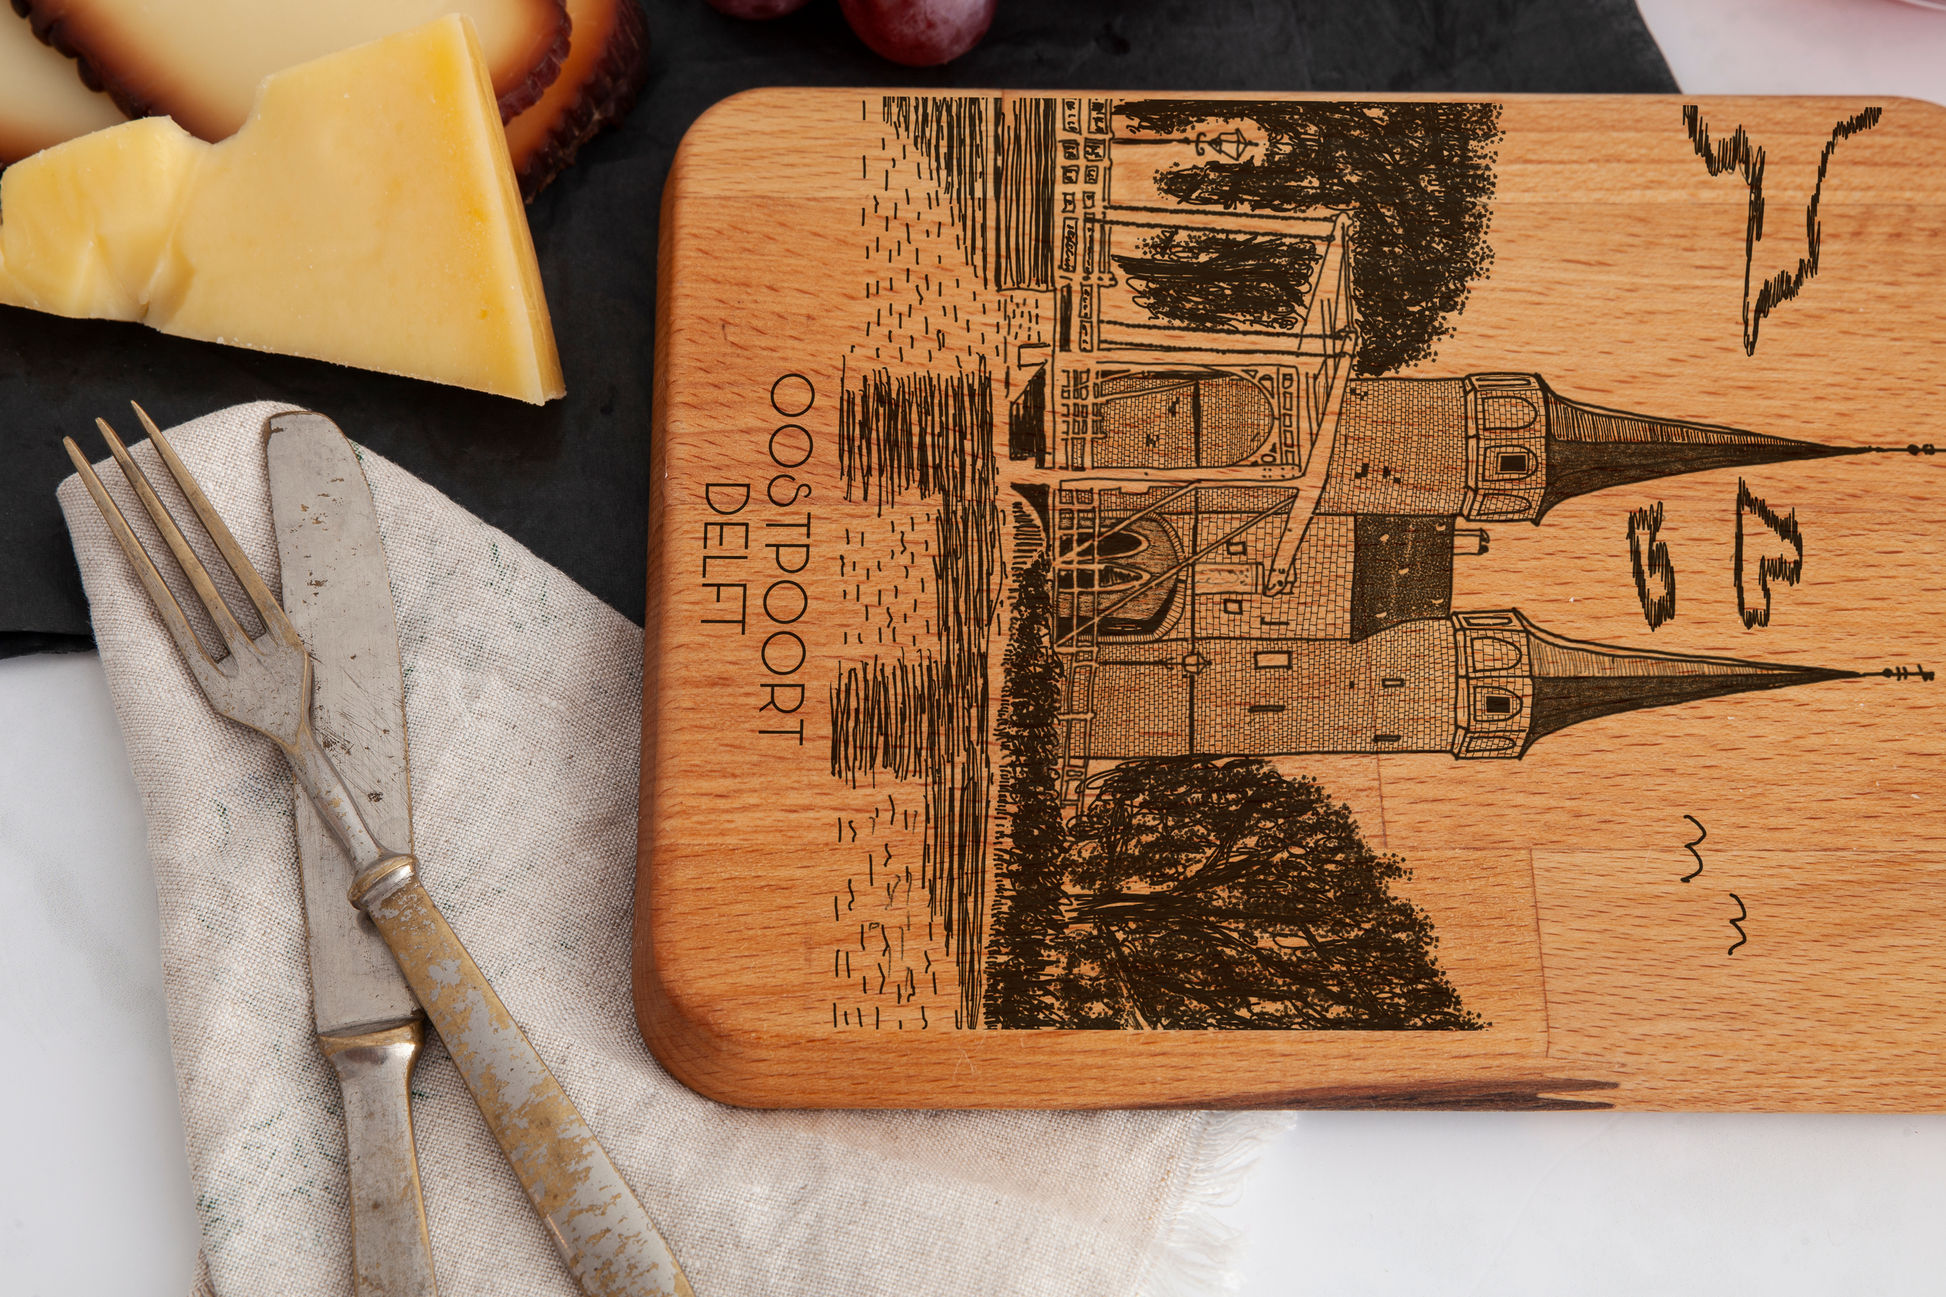 Delft, Oostpoort, cheese board, wood grain